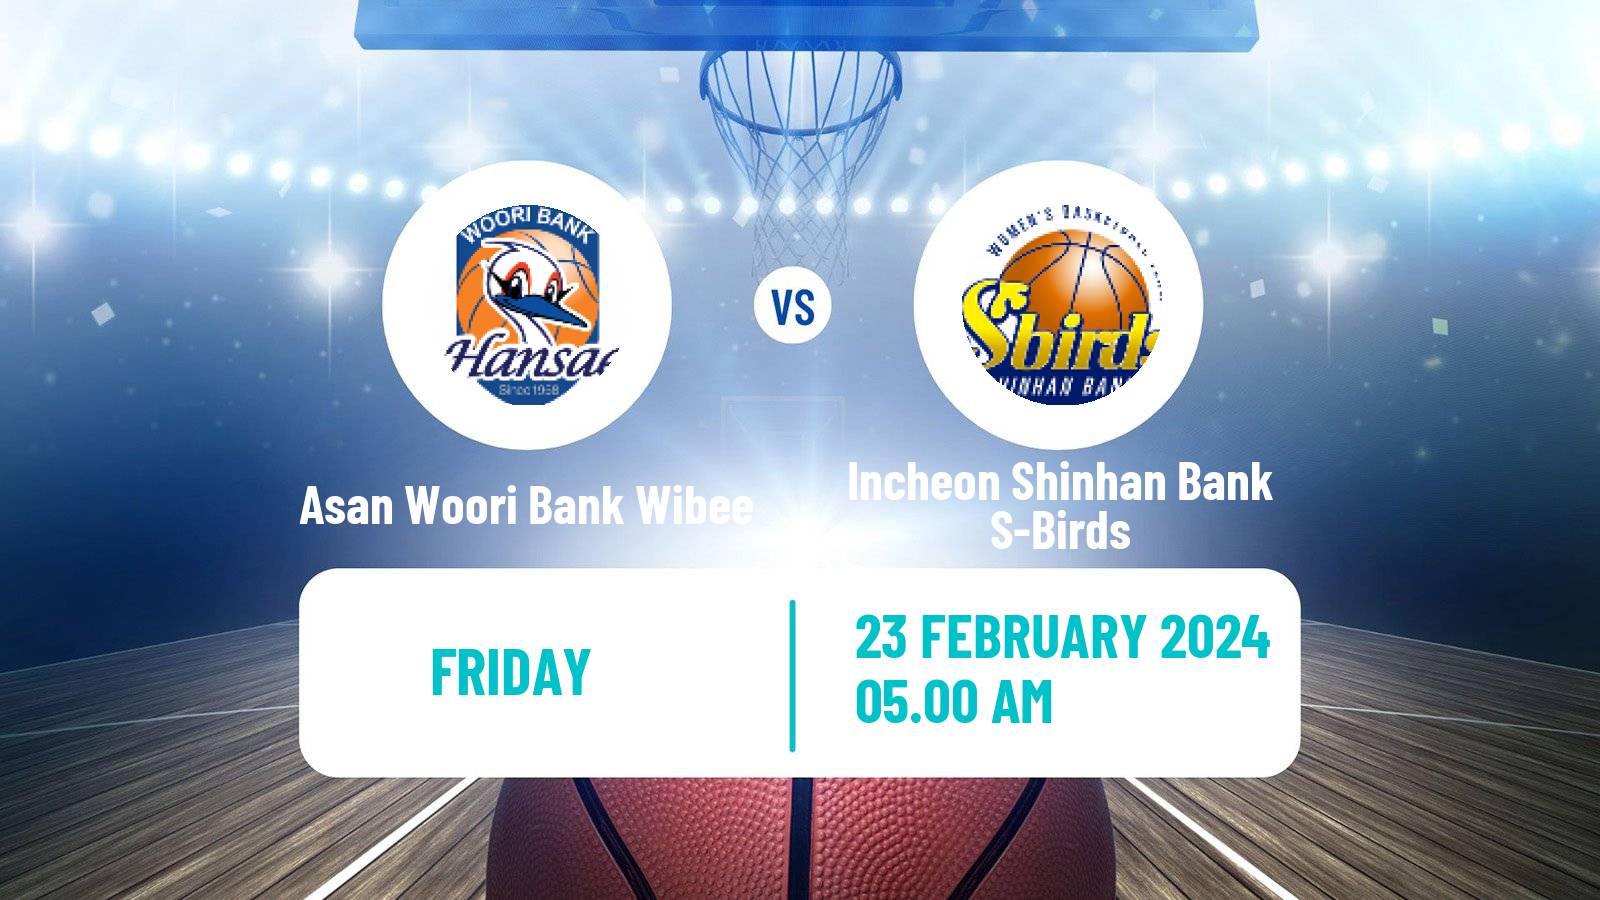 Basketball WKBL Asan Woori Bank Wibee - Incheon Shinhan Bank S-Birds